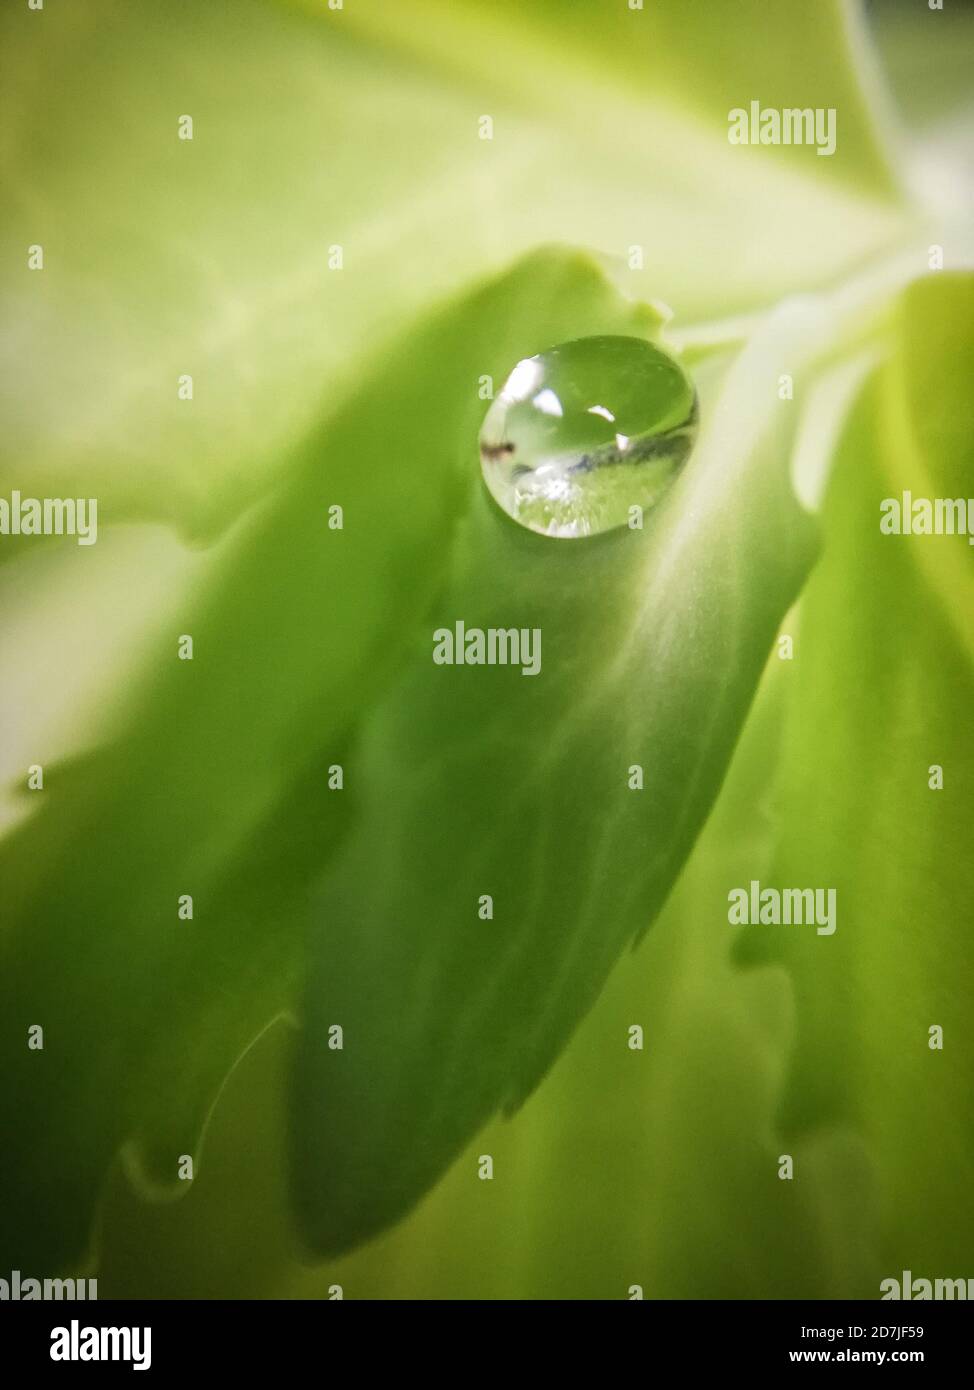 Goutte de pluie sur une feuille de plante grasse, macrophotographie Banque D'Images